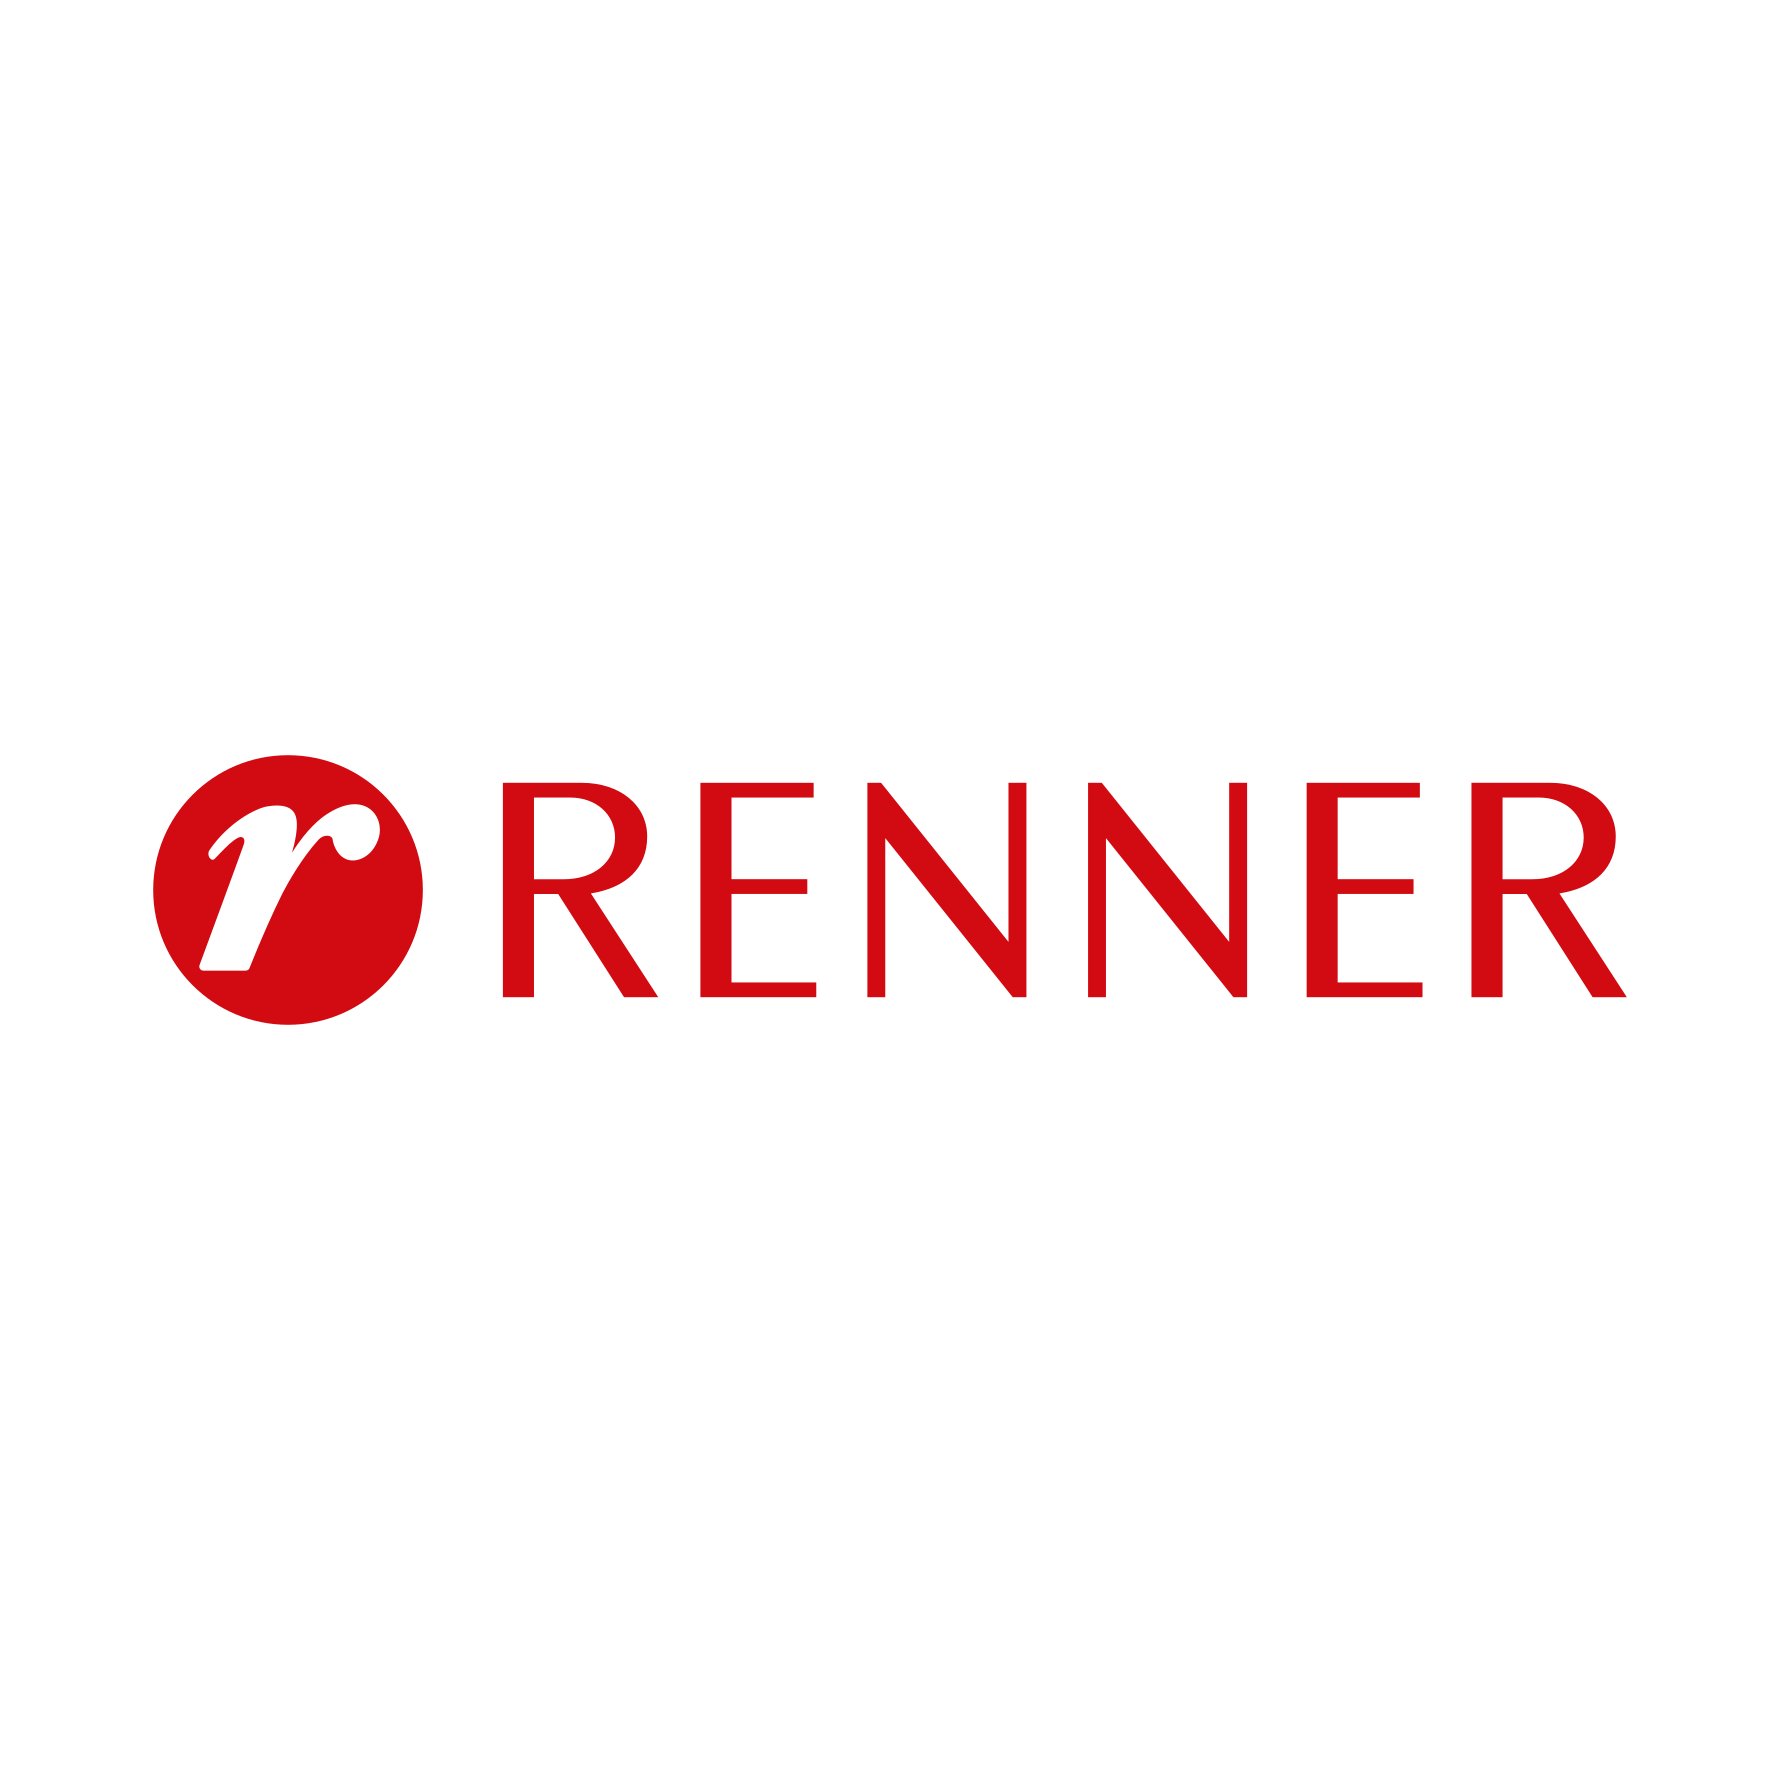 Renner Logo PNG.